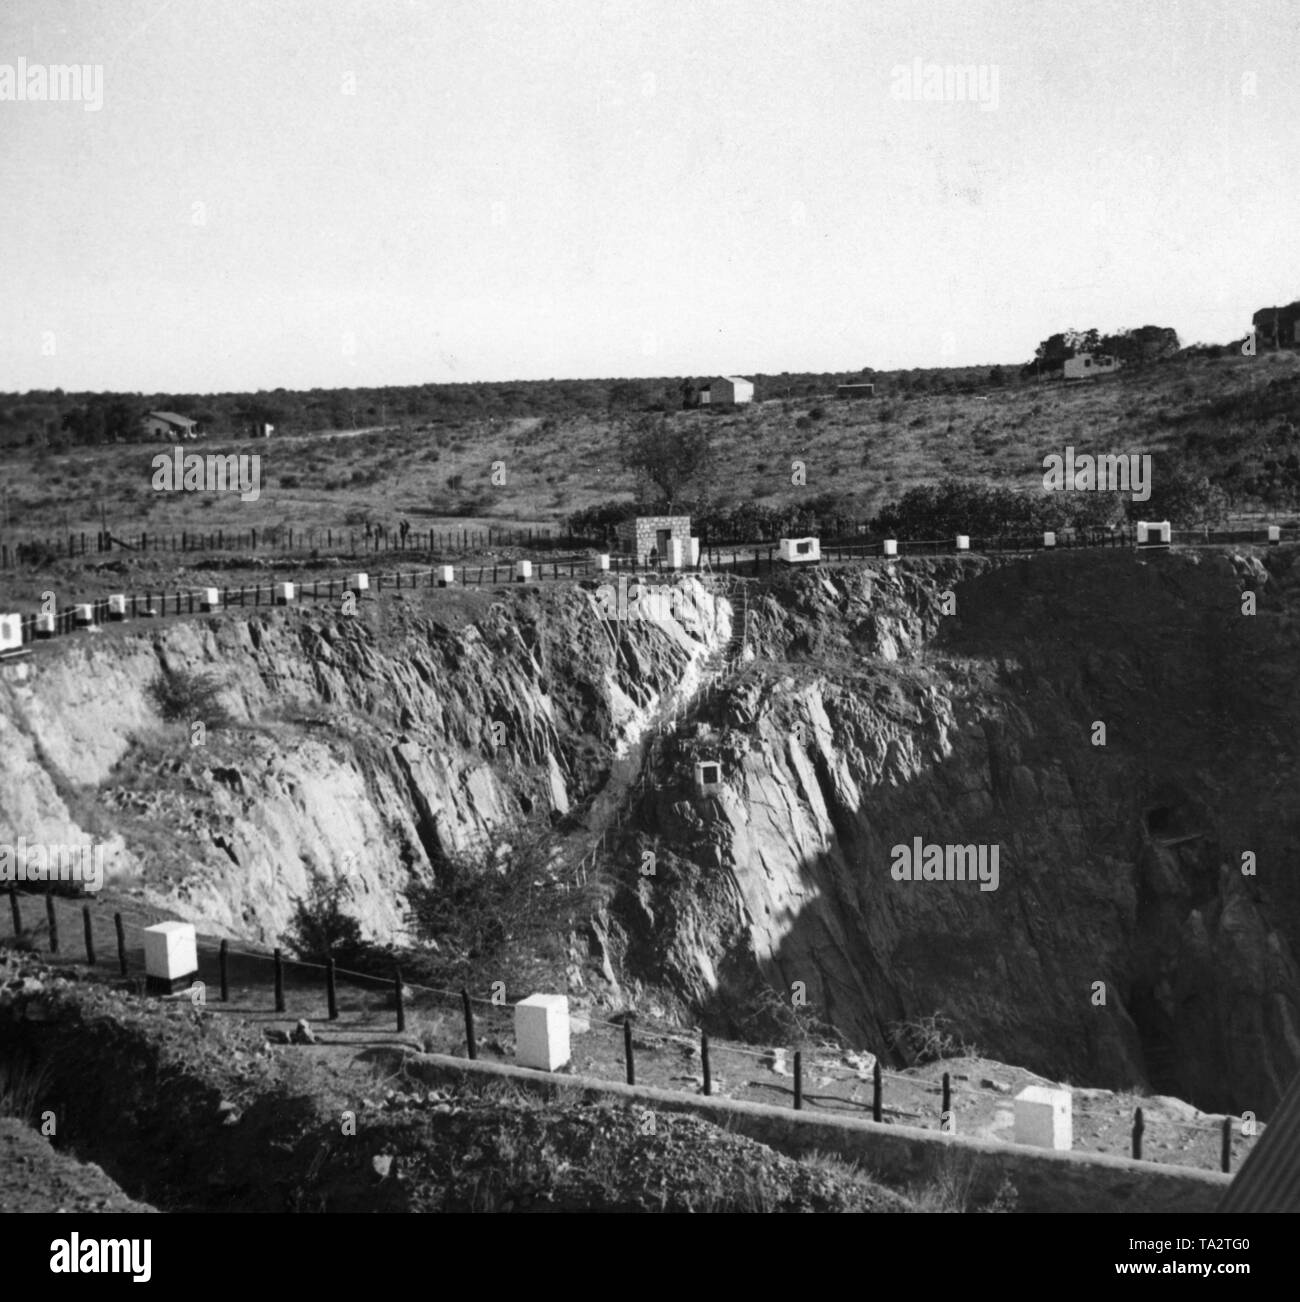 Die Grube bei Abenab auf dem Gebiet der ehemaligen Kolonie Deutsch Südwestafrika in Betrieb war von 1921 bis 1958 und war mit meinen Vanadium und Zink verwendet. Stockfoto